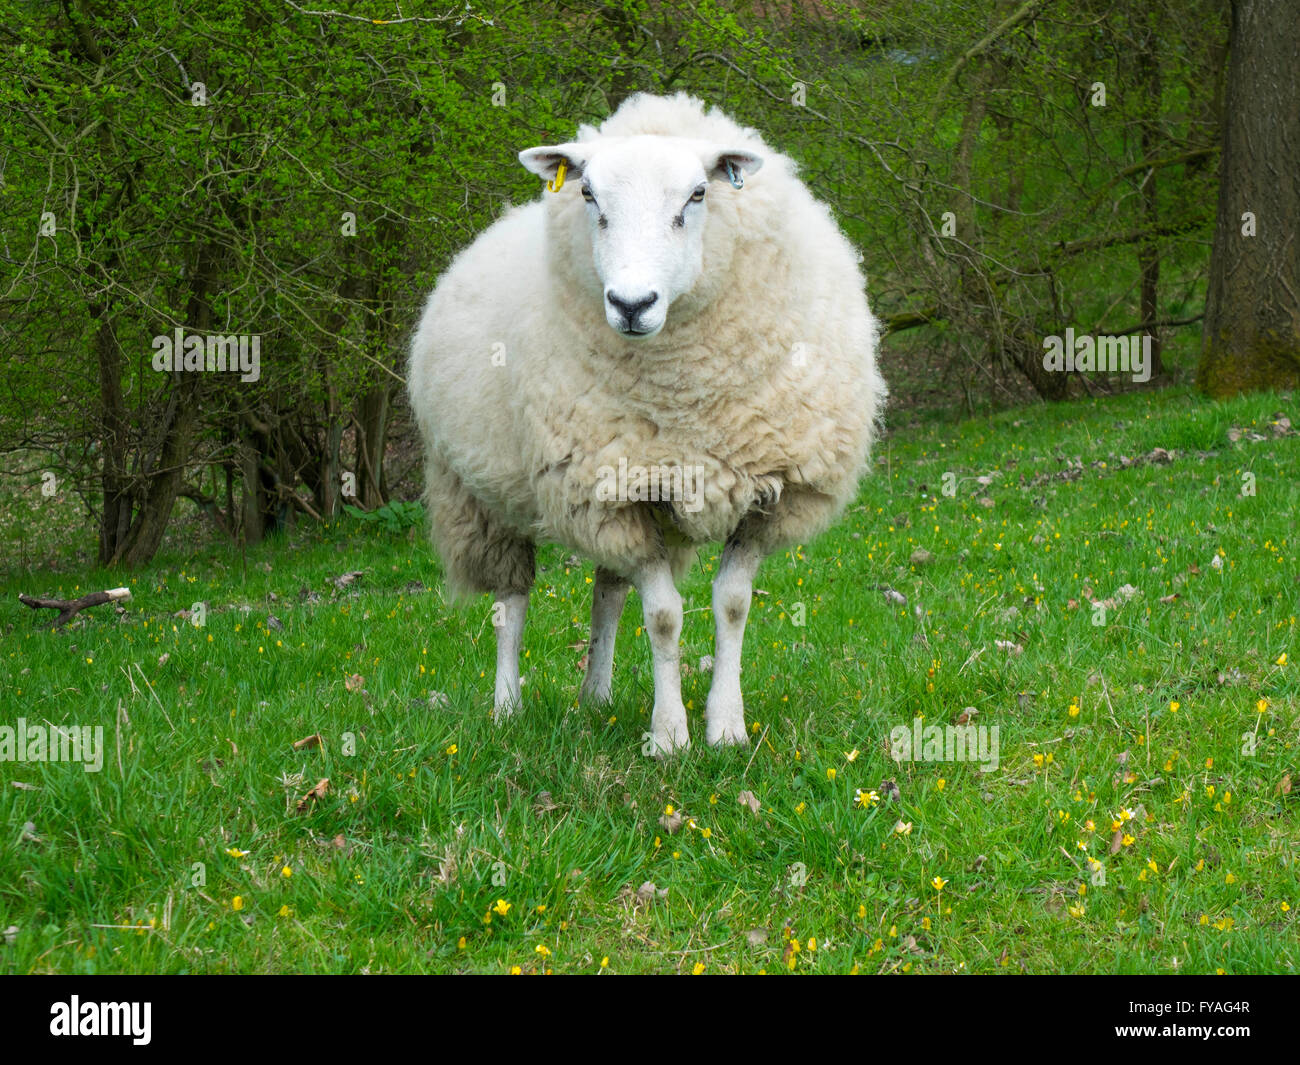 Animales de Granja sola oveja en bosques abiertos Foto de stock